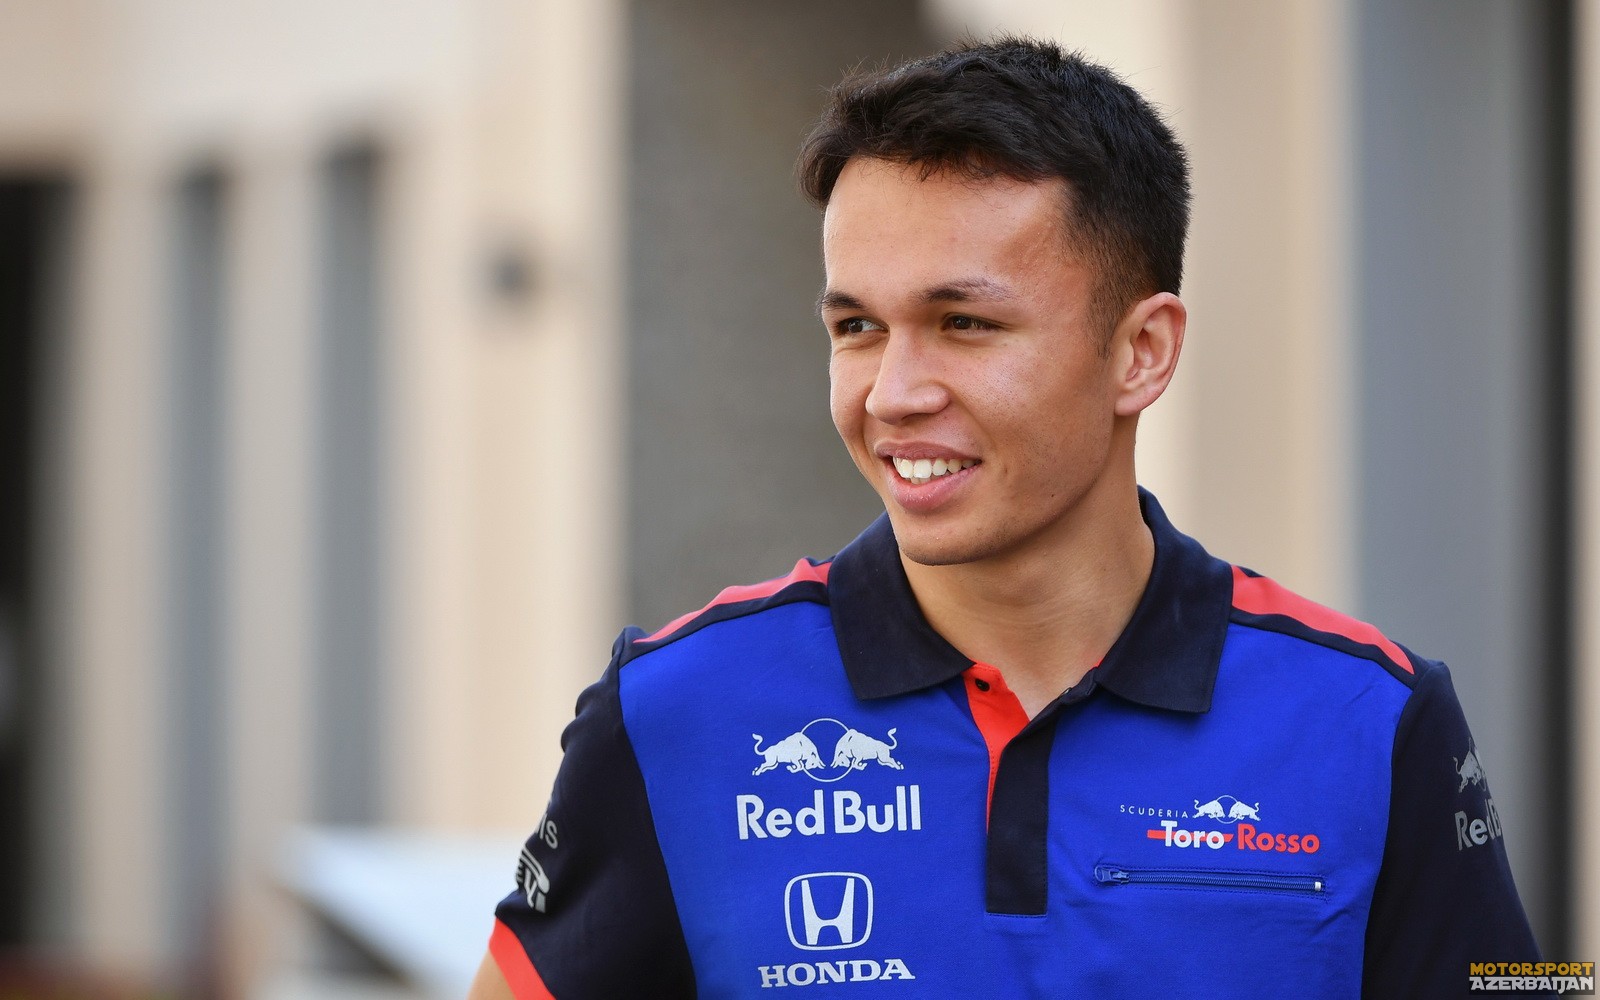 Rəsmən: Aleksander Elbon gələn il Toro Rosso-da yarışacaq